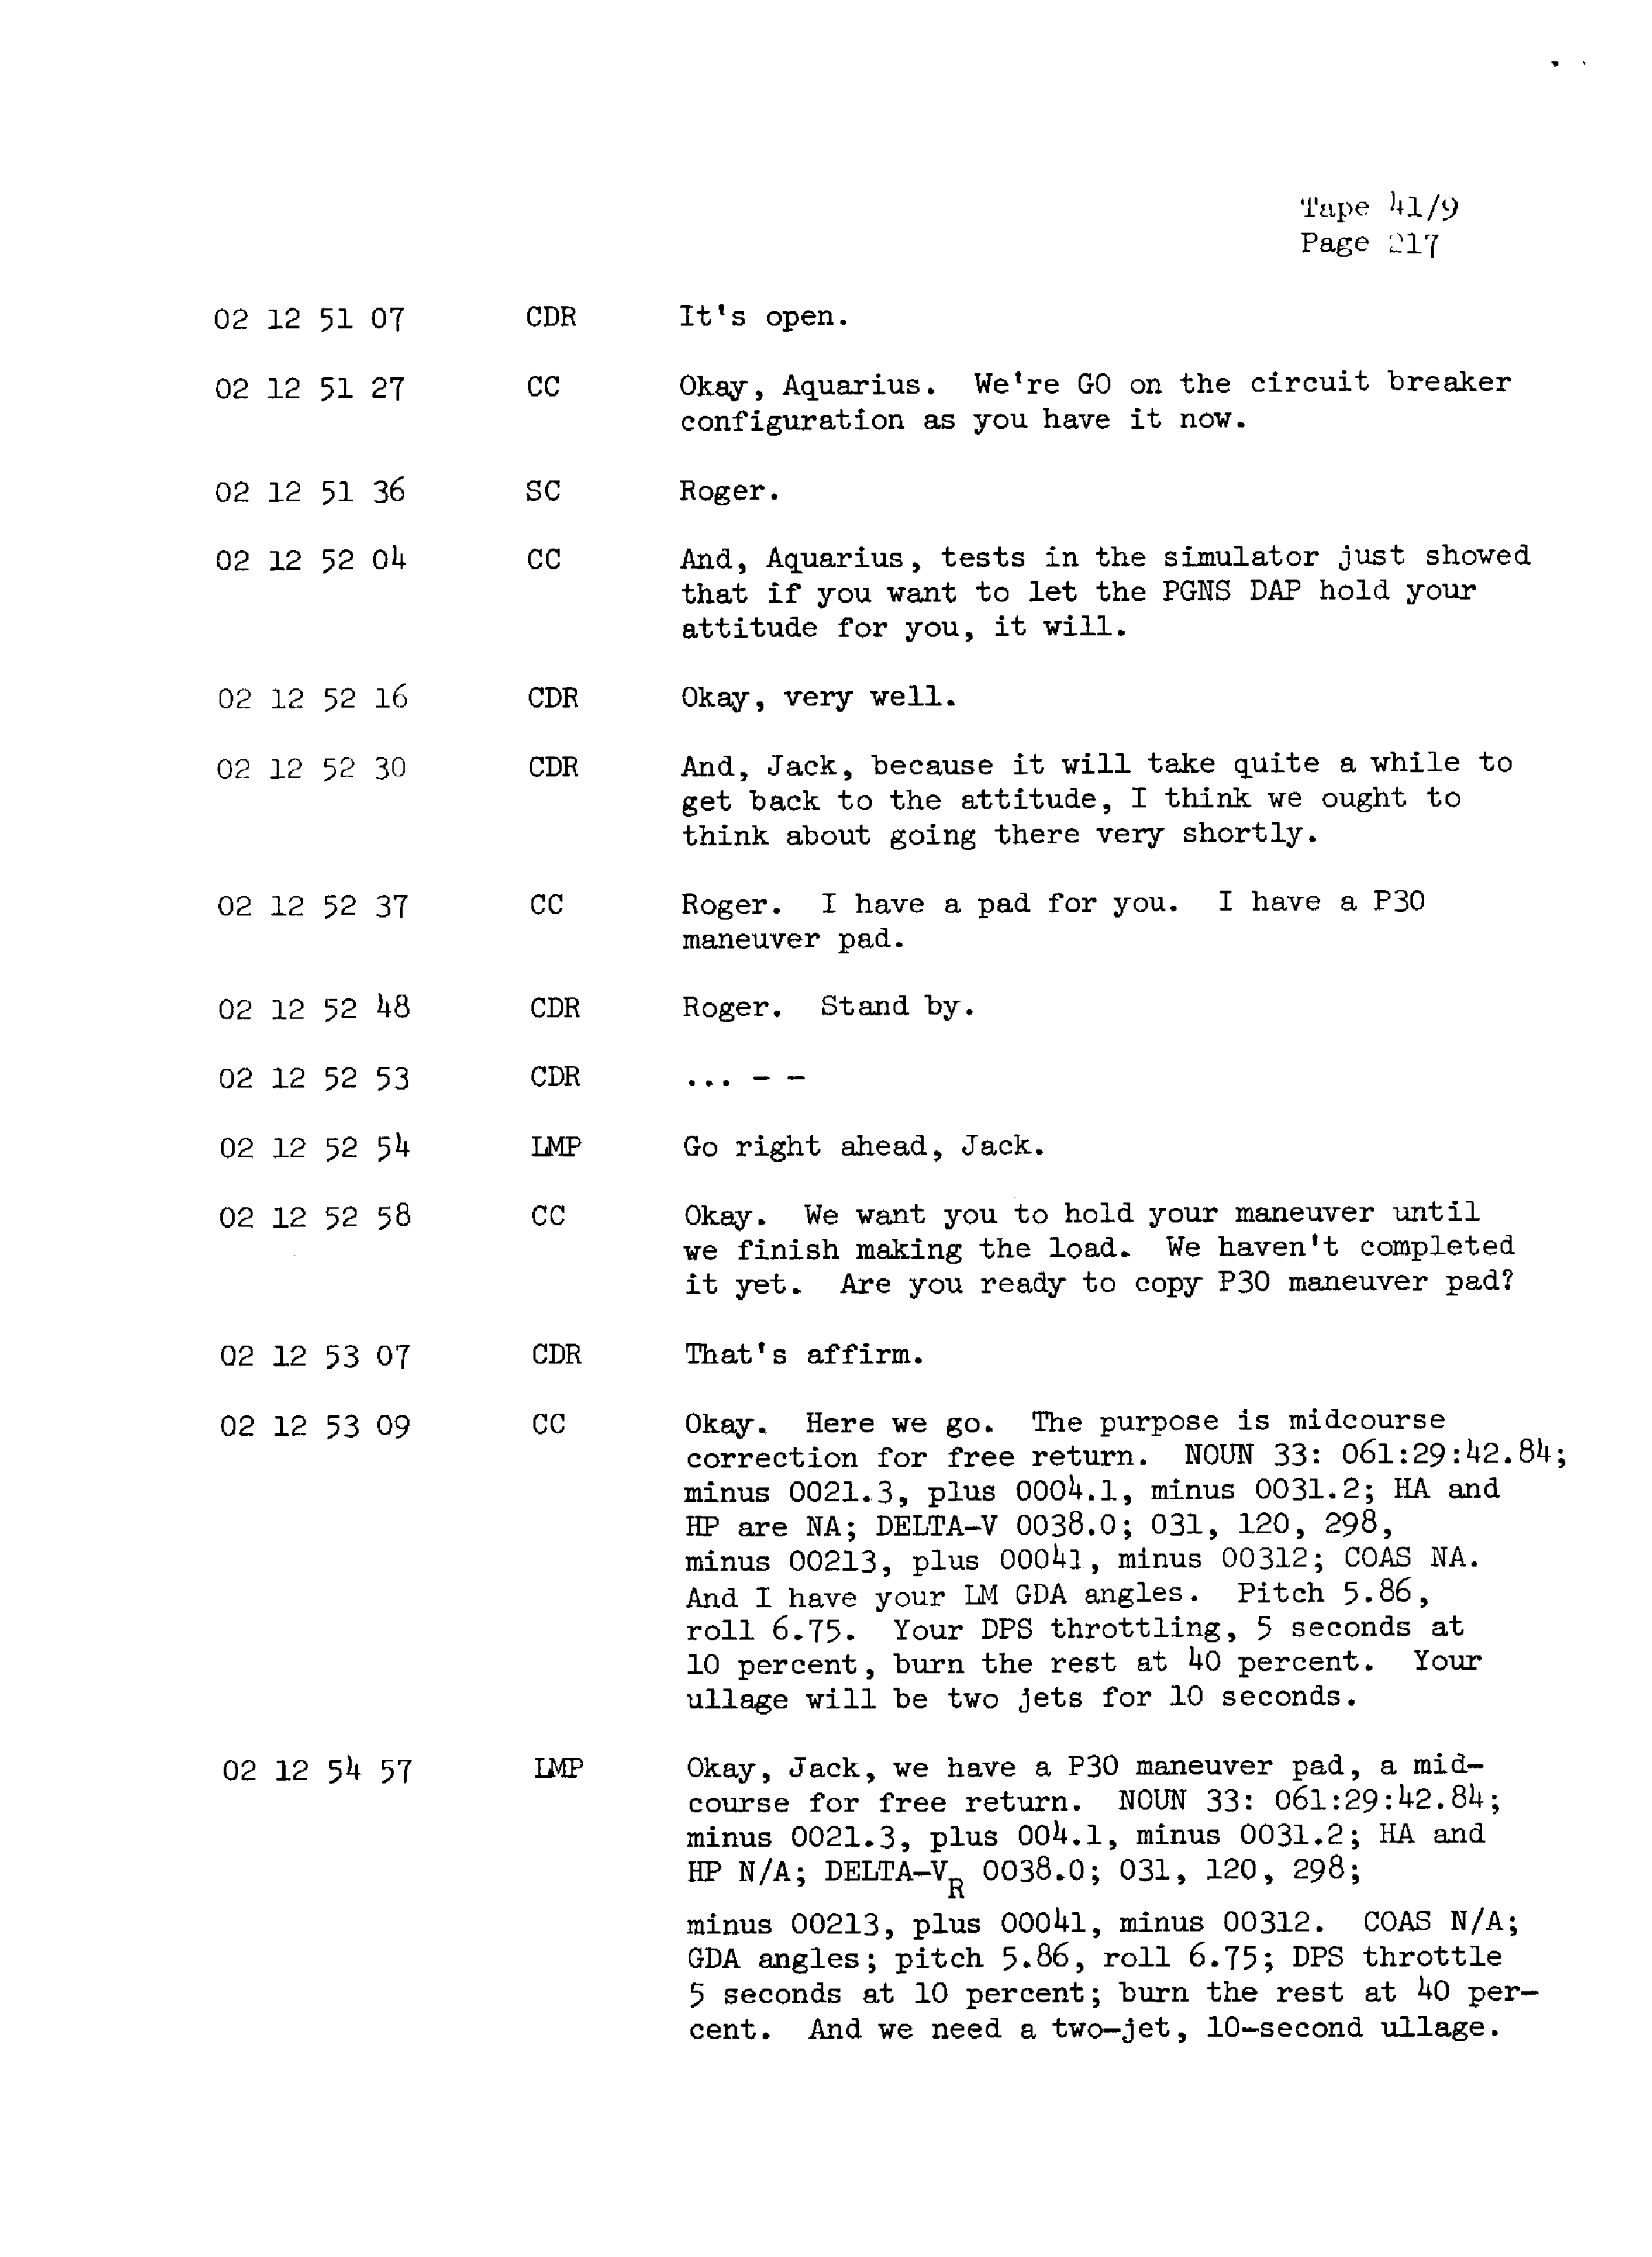 Page 224 of Apollo 13’s original transcript